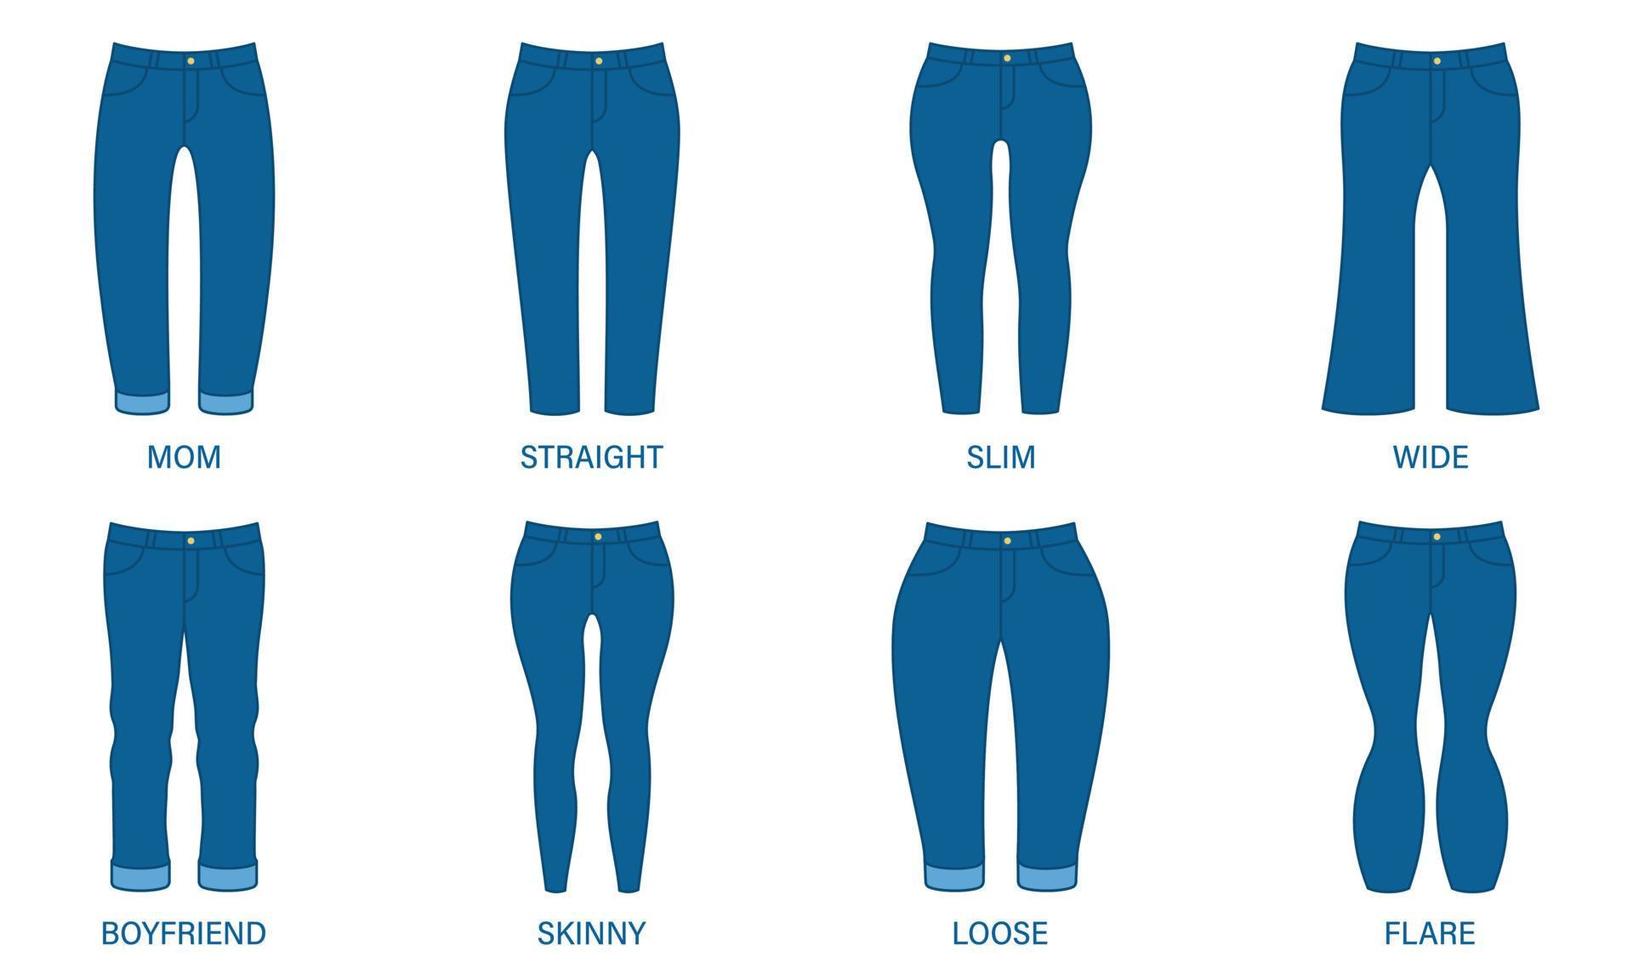 stile femminile dei pantaloni del denim. tipo di jeans donna. pittogramma silhouette skinny, boyfriend, loose, slim, straight, mom, flare, wide jeans. stile pantaloni da donna blu. illustrazione vettoriale isolata.